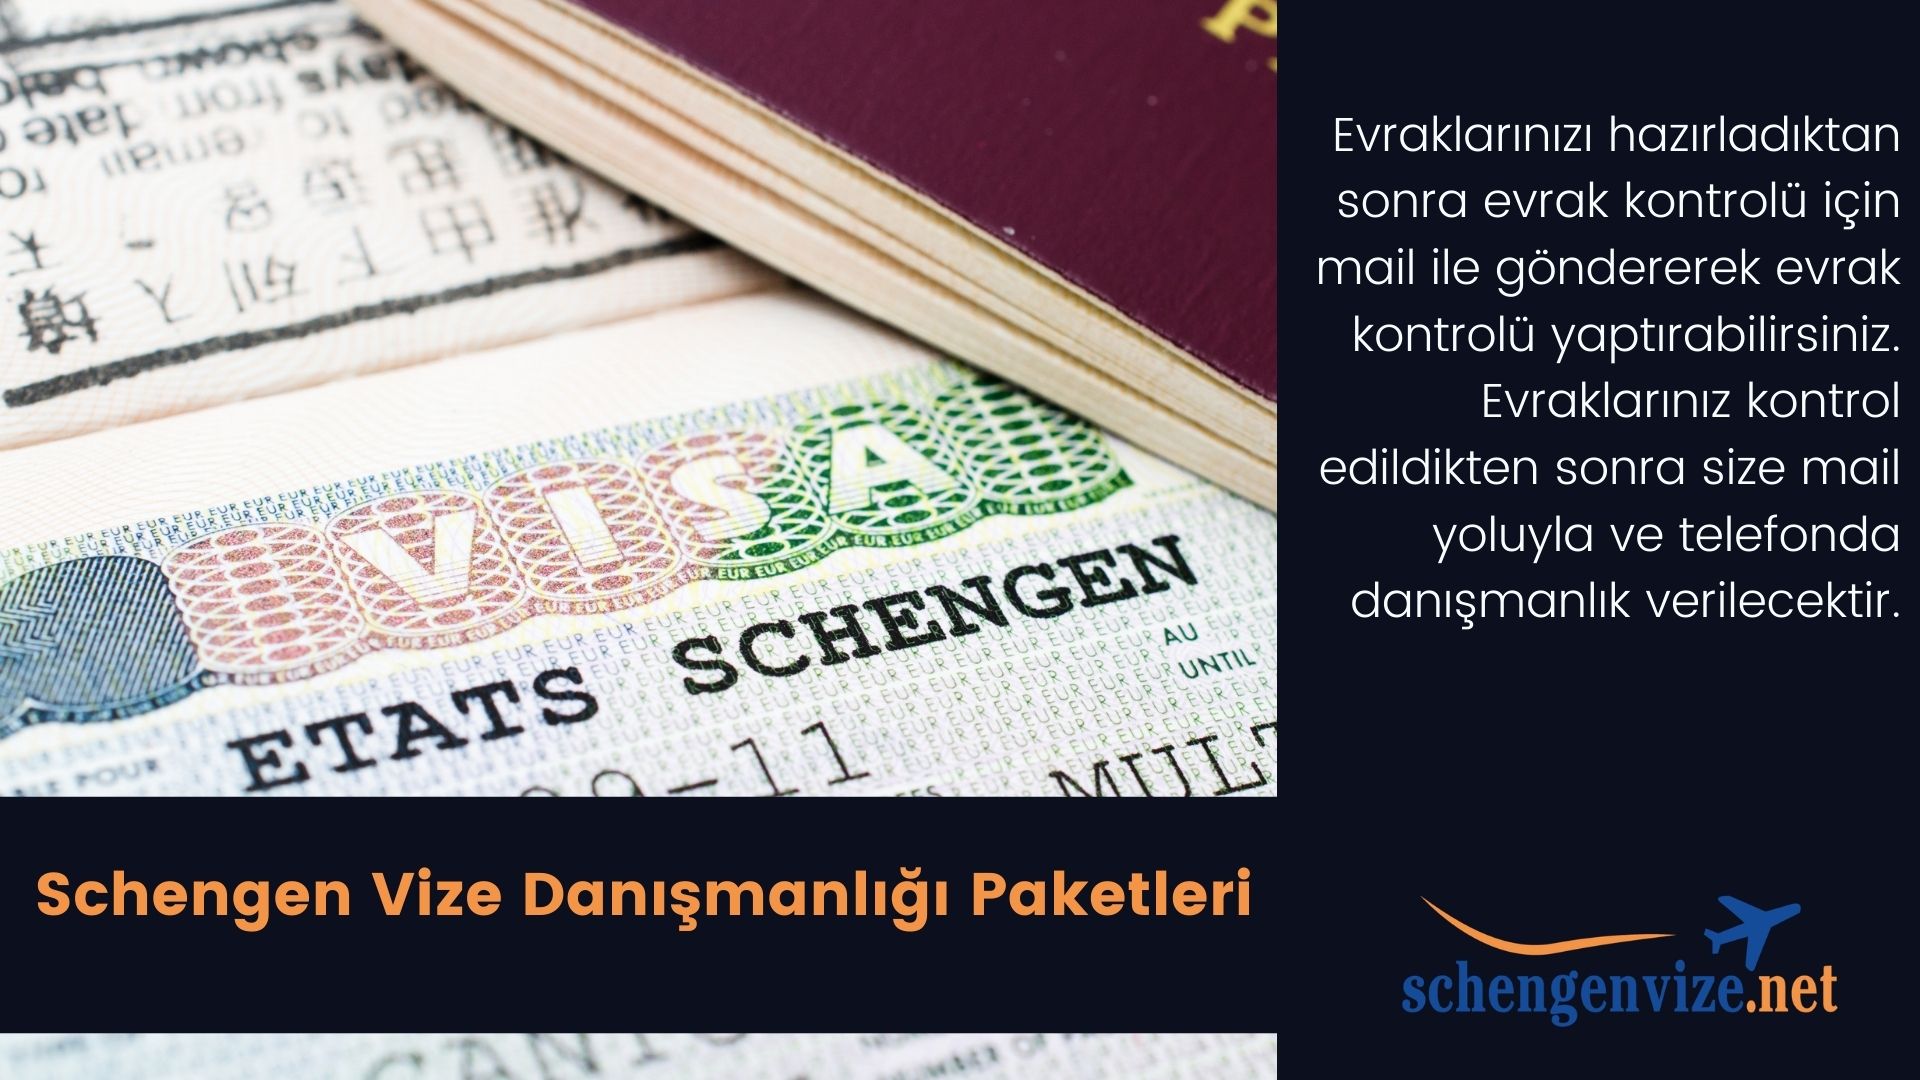 Schengen Vize Danışmanlık Paketleri